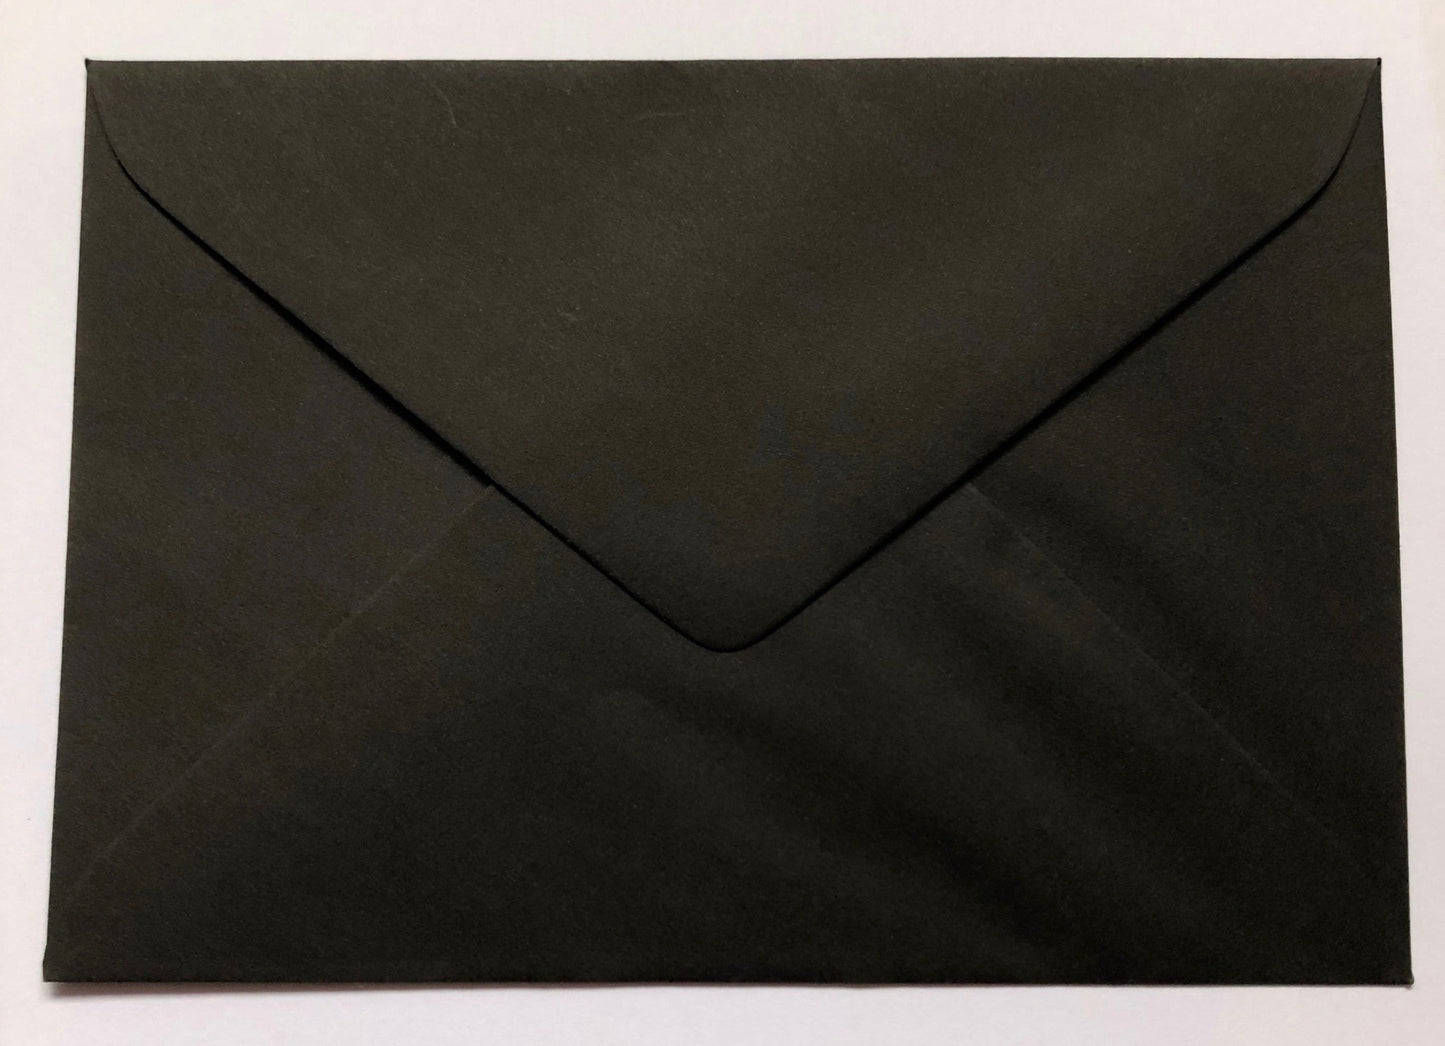 125x175mm Black Envelopes 100gsm